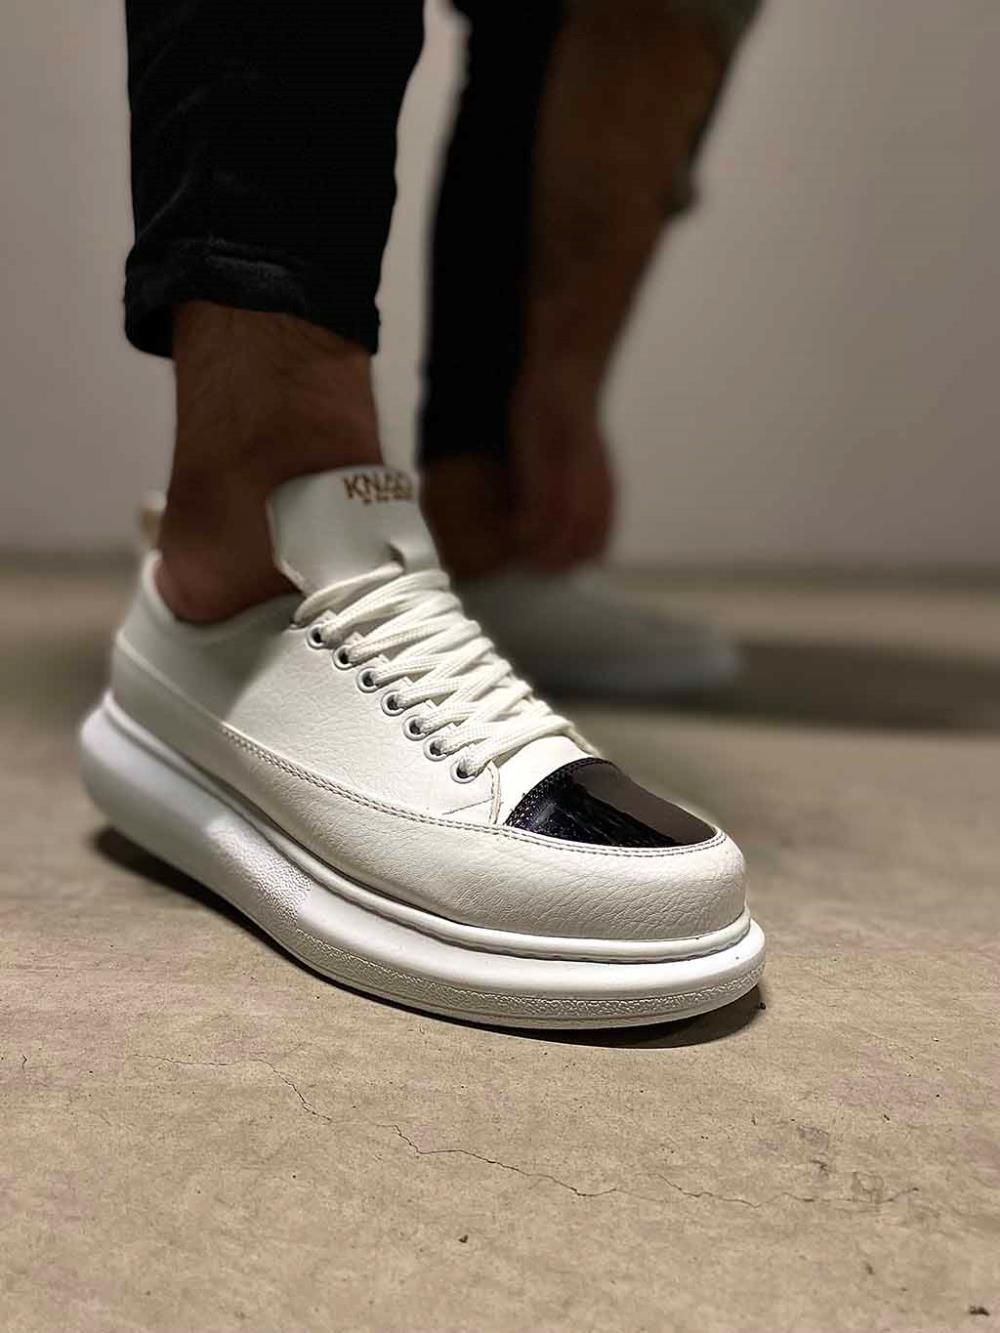 Men's Knack Sneakers Shoes 813 White - STREET MODE ™